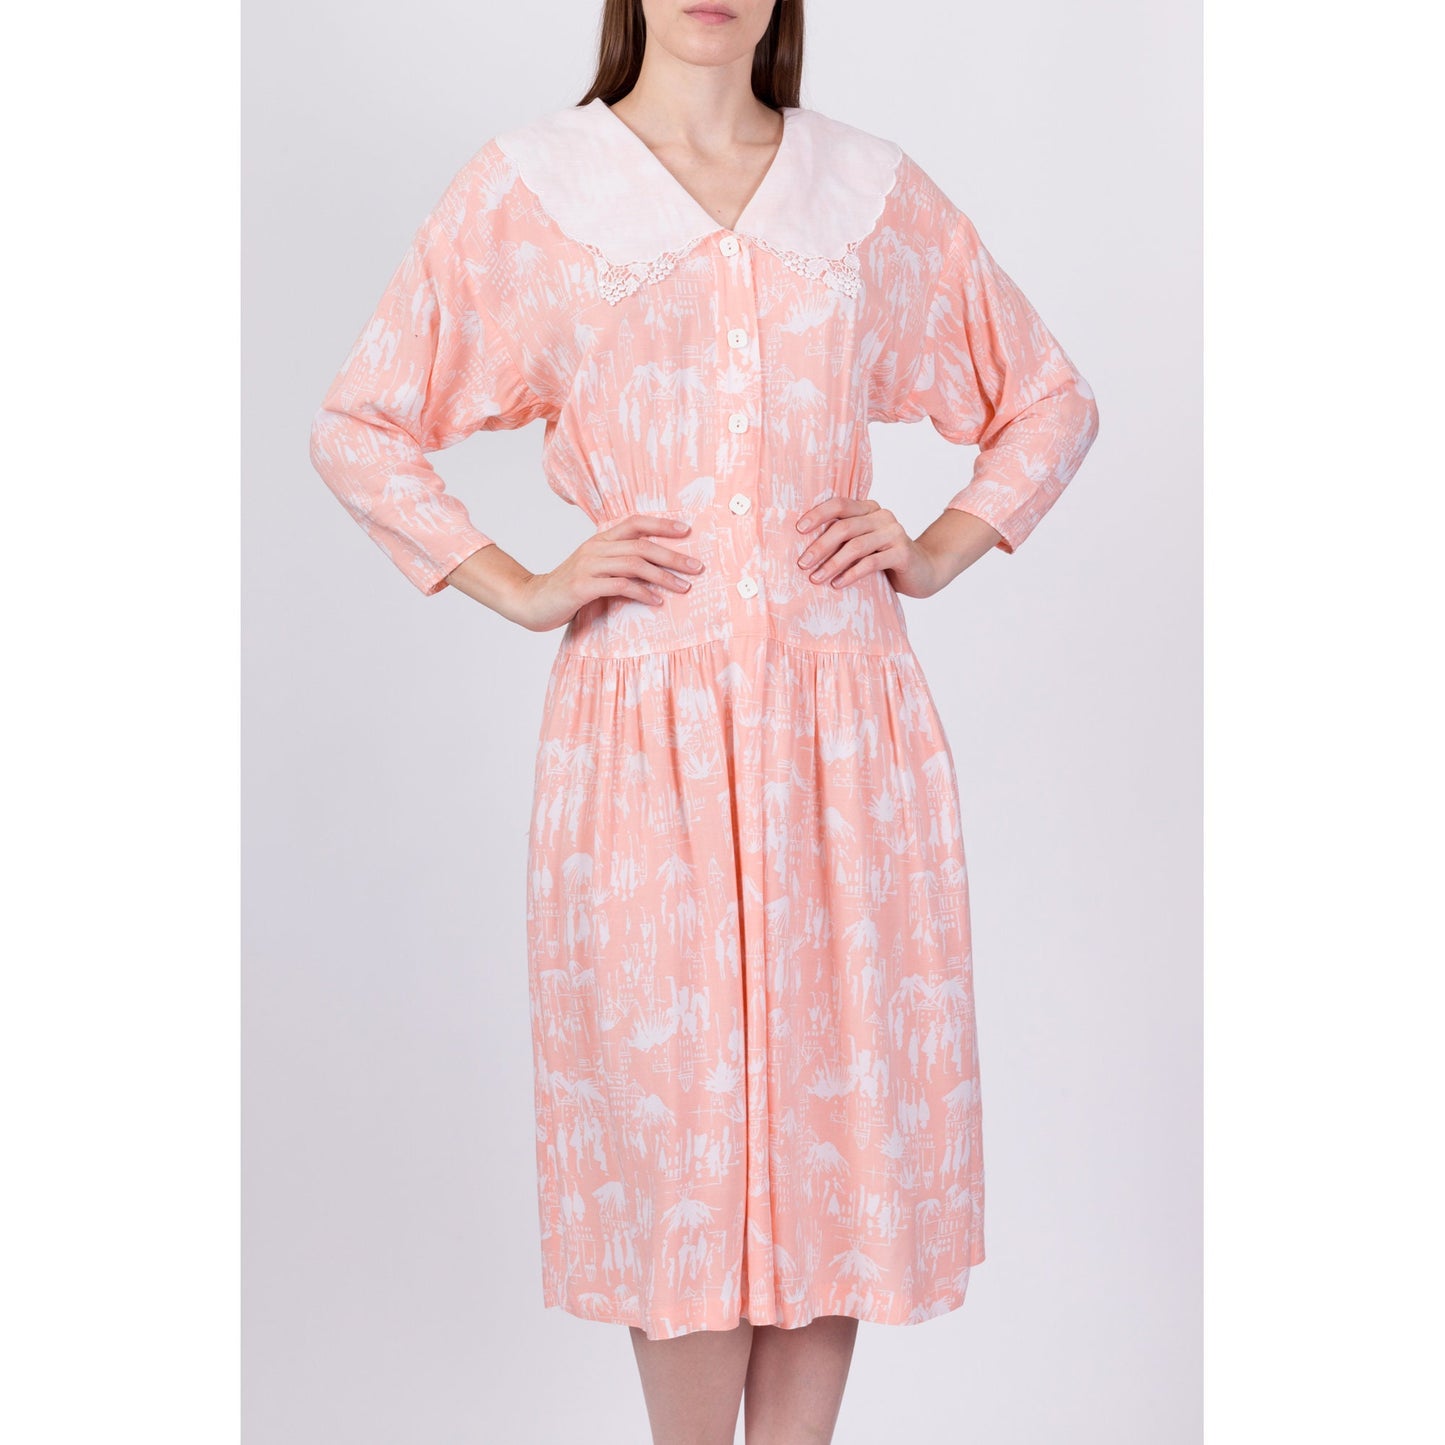 80s Peach Novelty Print Sailor Collar Dress - Small 